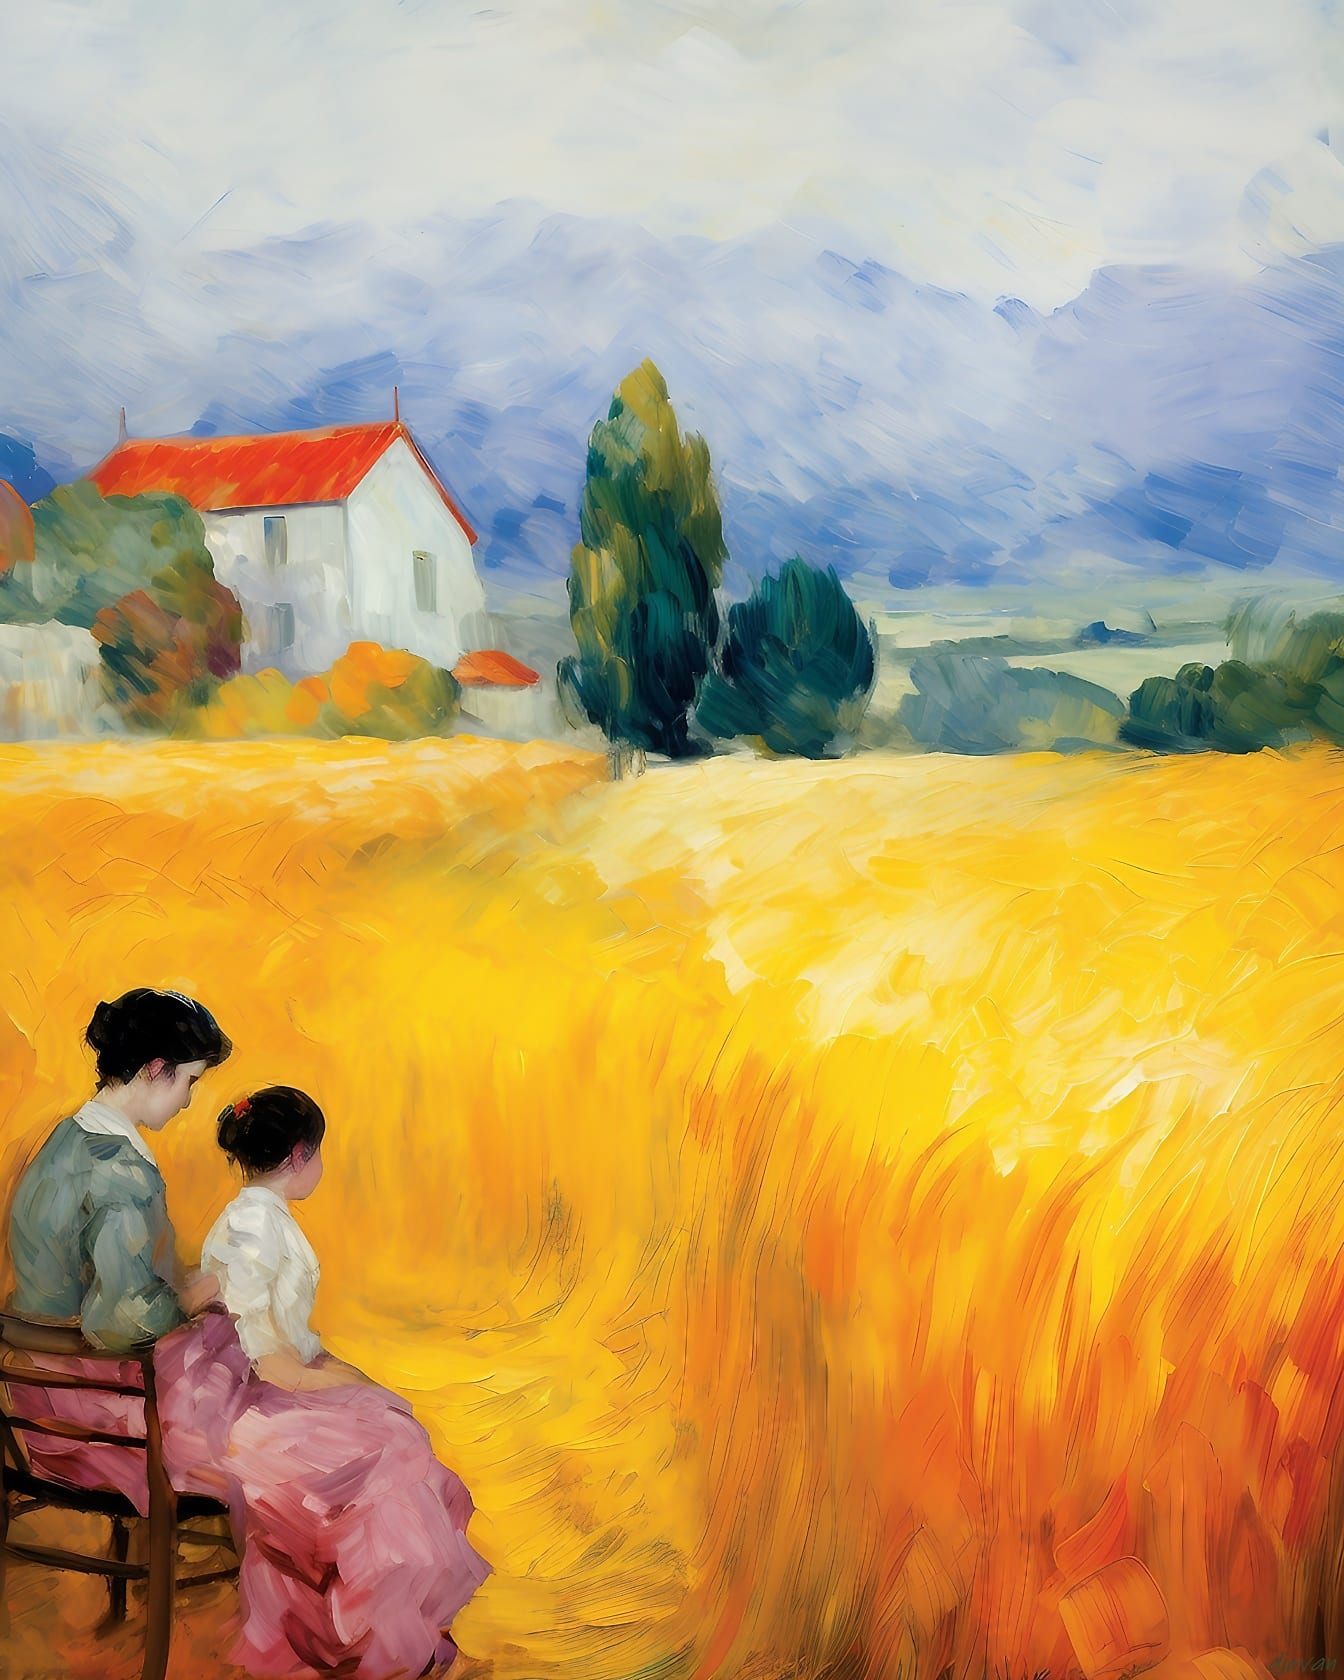 Gemälde einer Mutter und ihres Kindes, die auf einer Bank in einem Weizenfeld sitzen